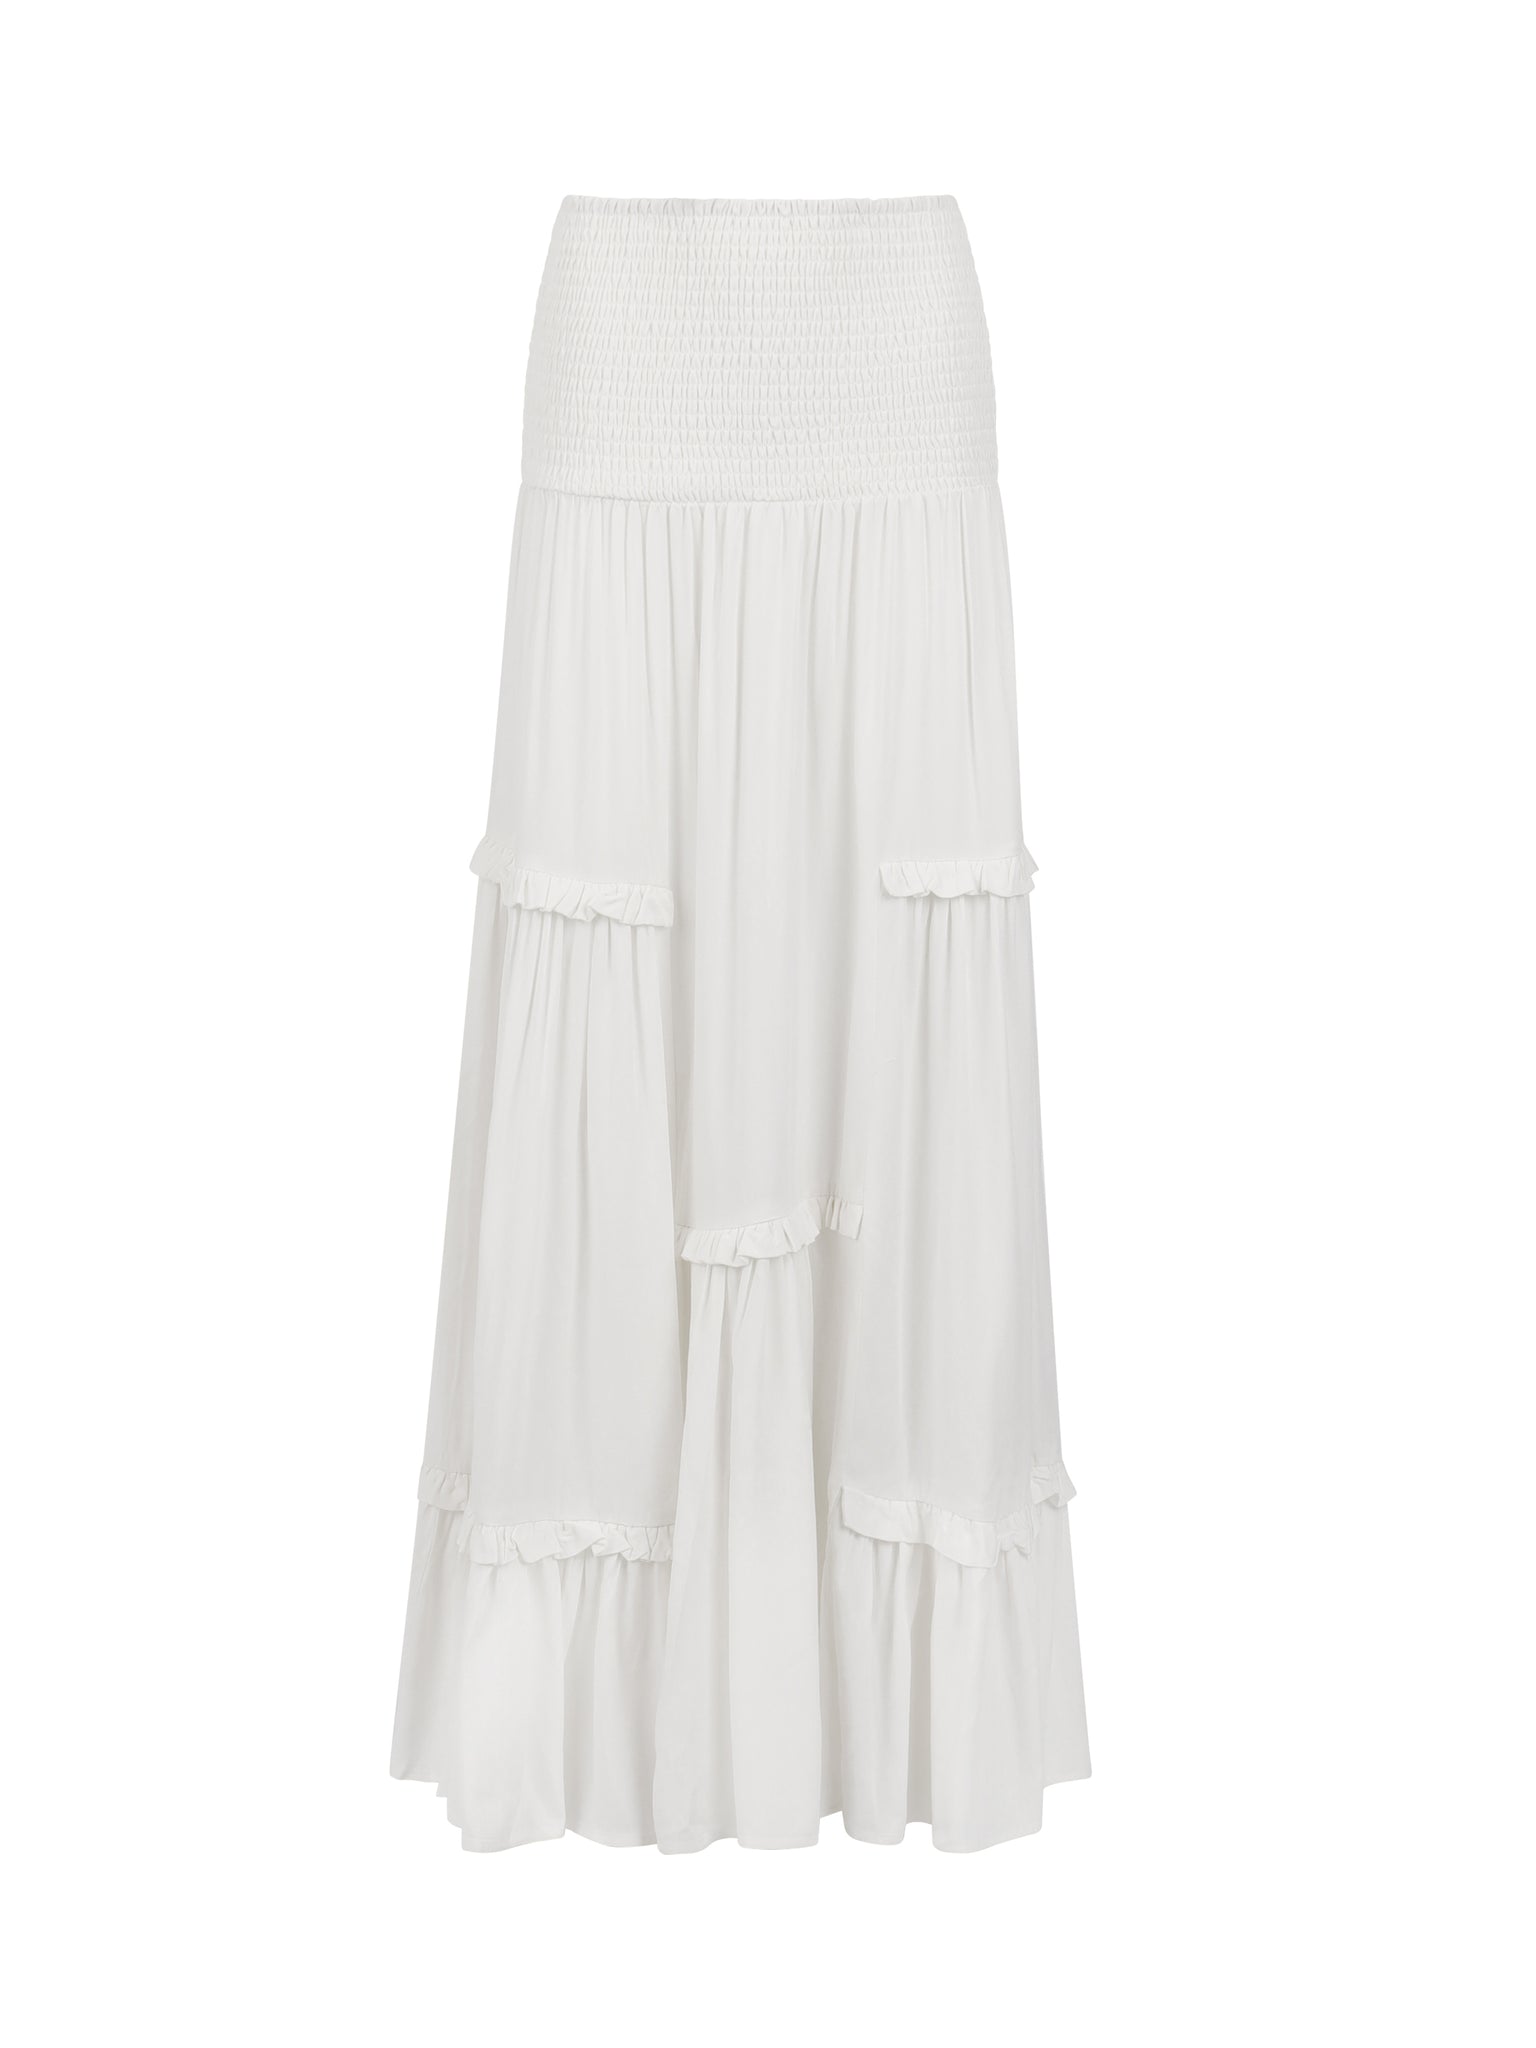 The Gemma Skirt - White